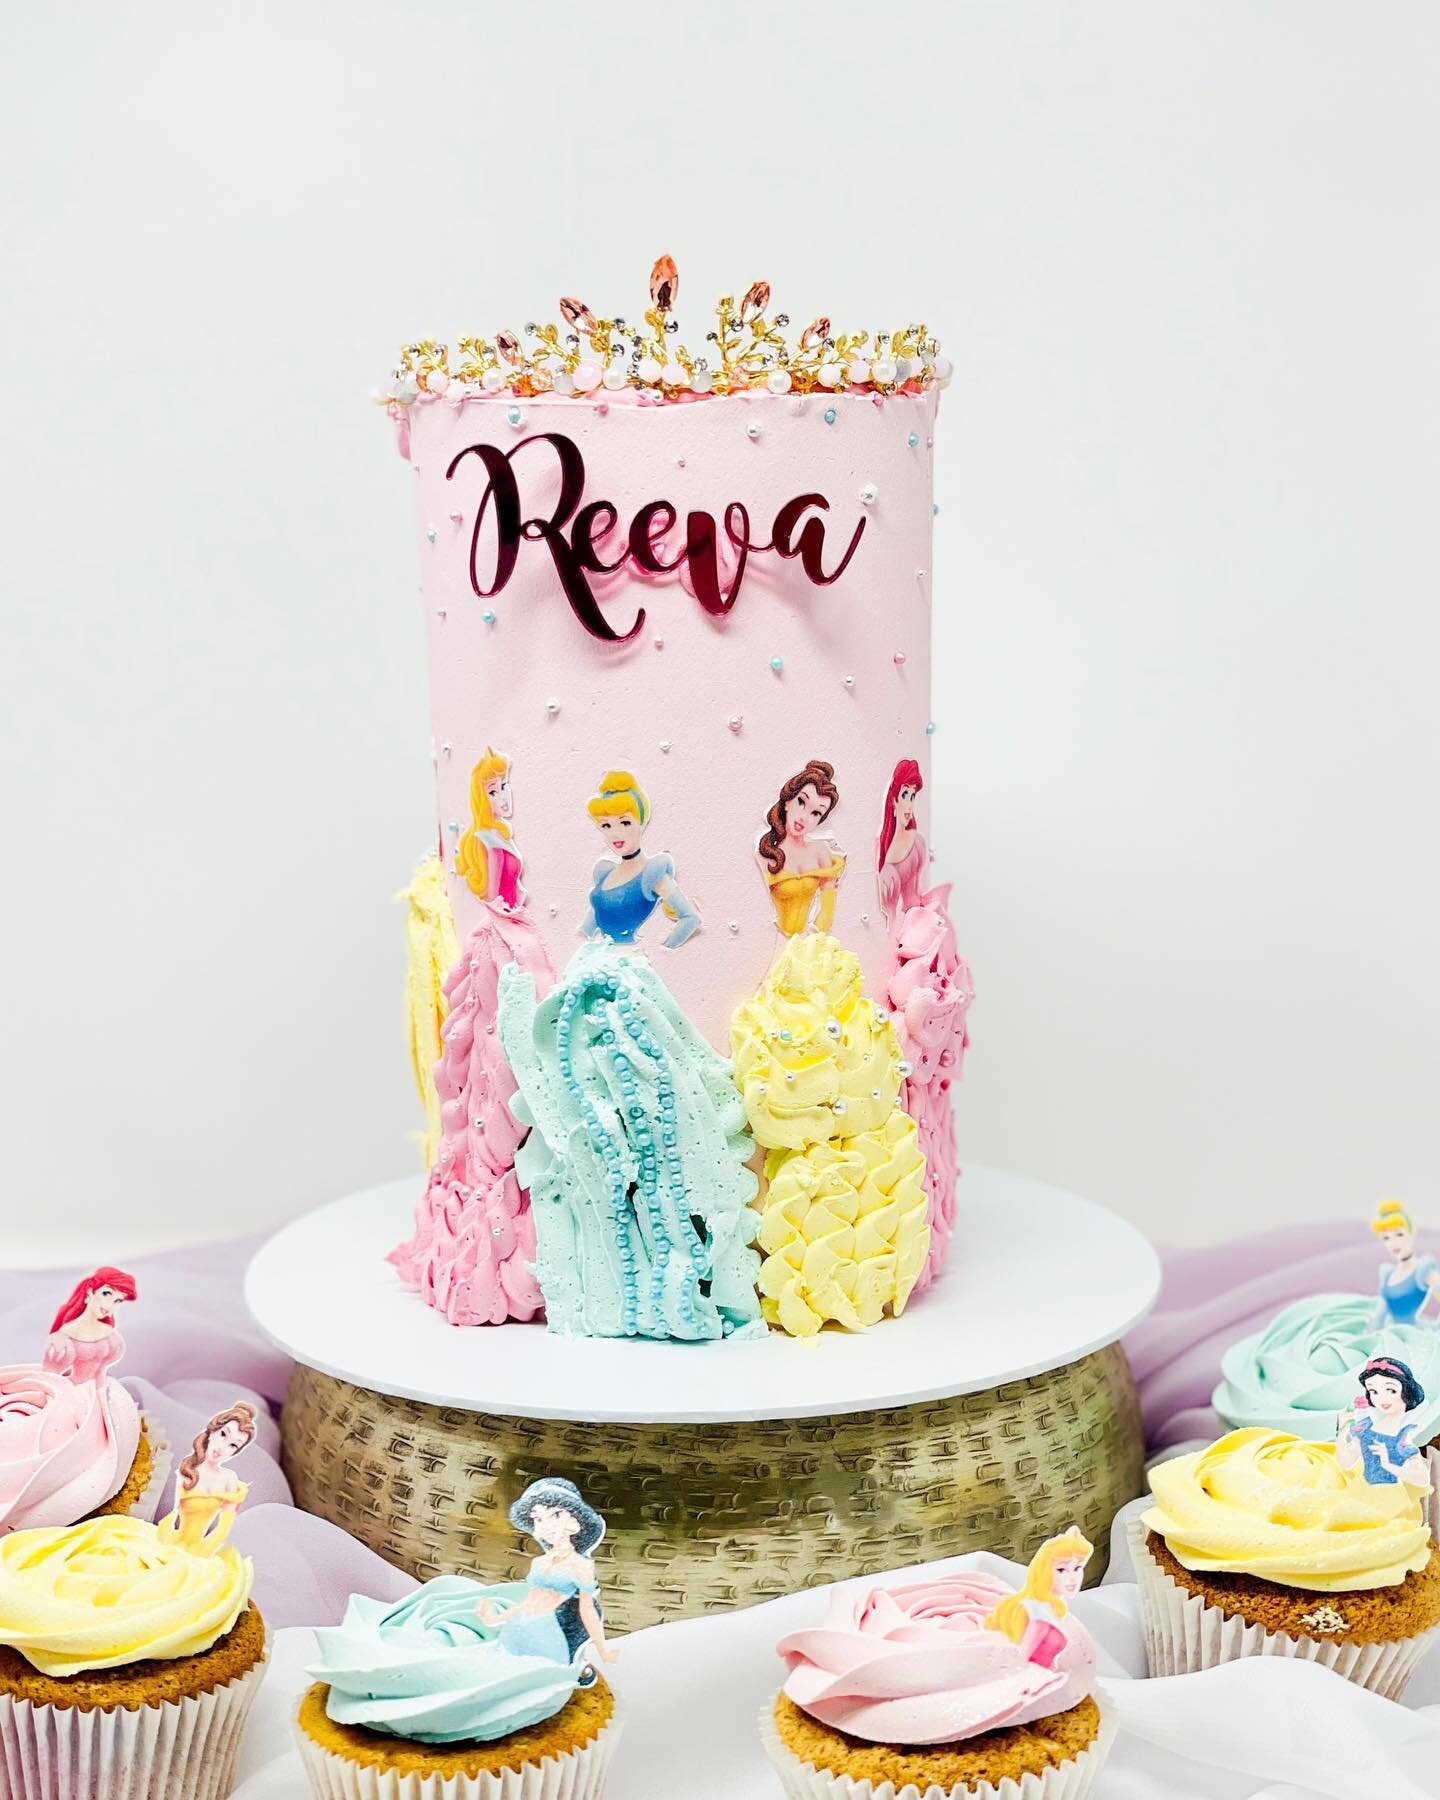 Princess Reeva 🥰 #birthday #princess #birthdaycake #princess #disney #disneyprincess